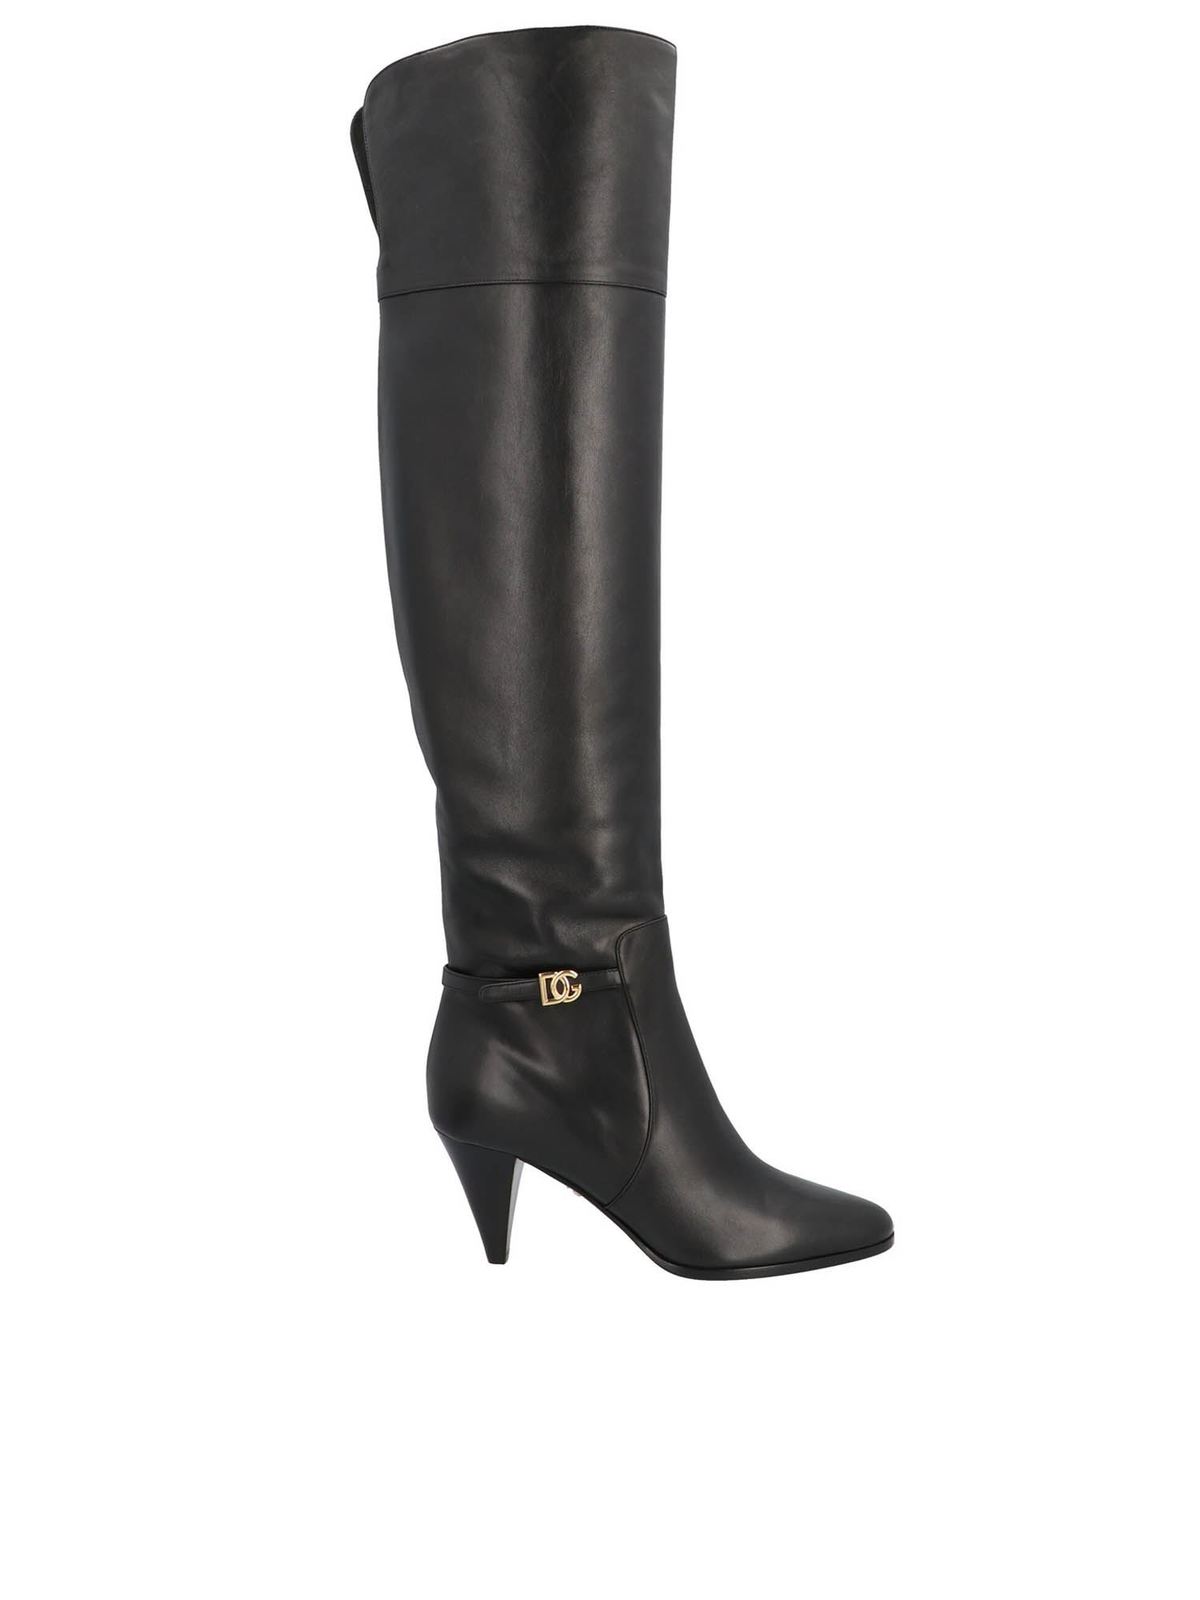 Dolce & Gabbana - DG Millennials boots in black - boots - CU0660AW69580999